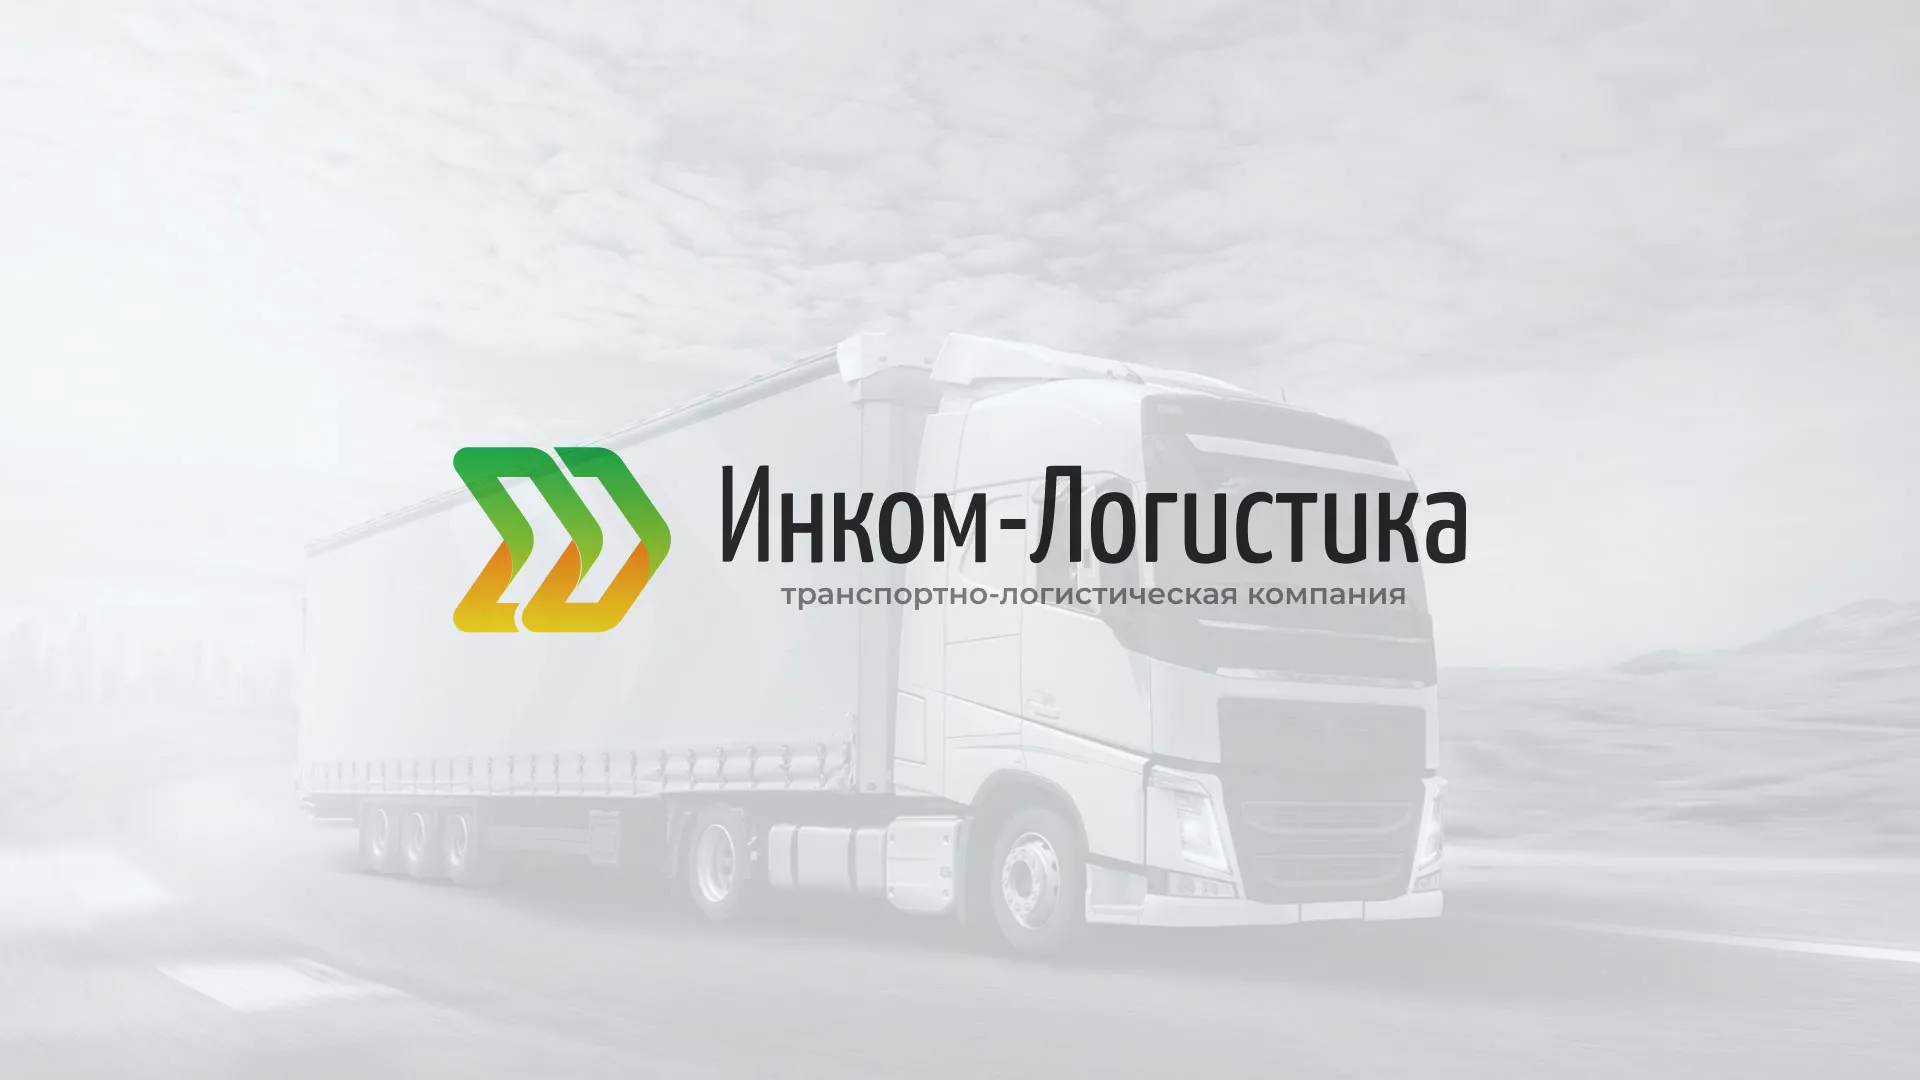 Разработка логотипа и сайта компании «Инком-Логистика» в Комсомольске-на-Амуре